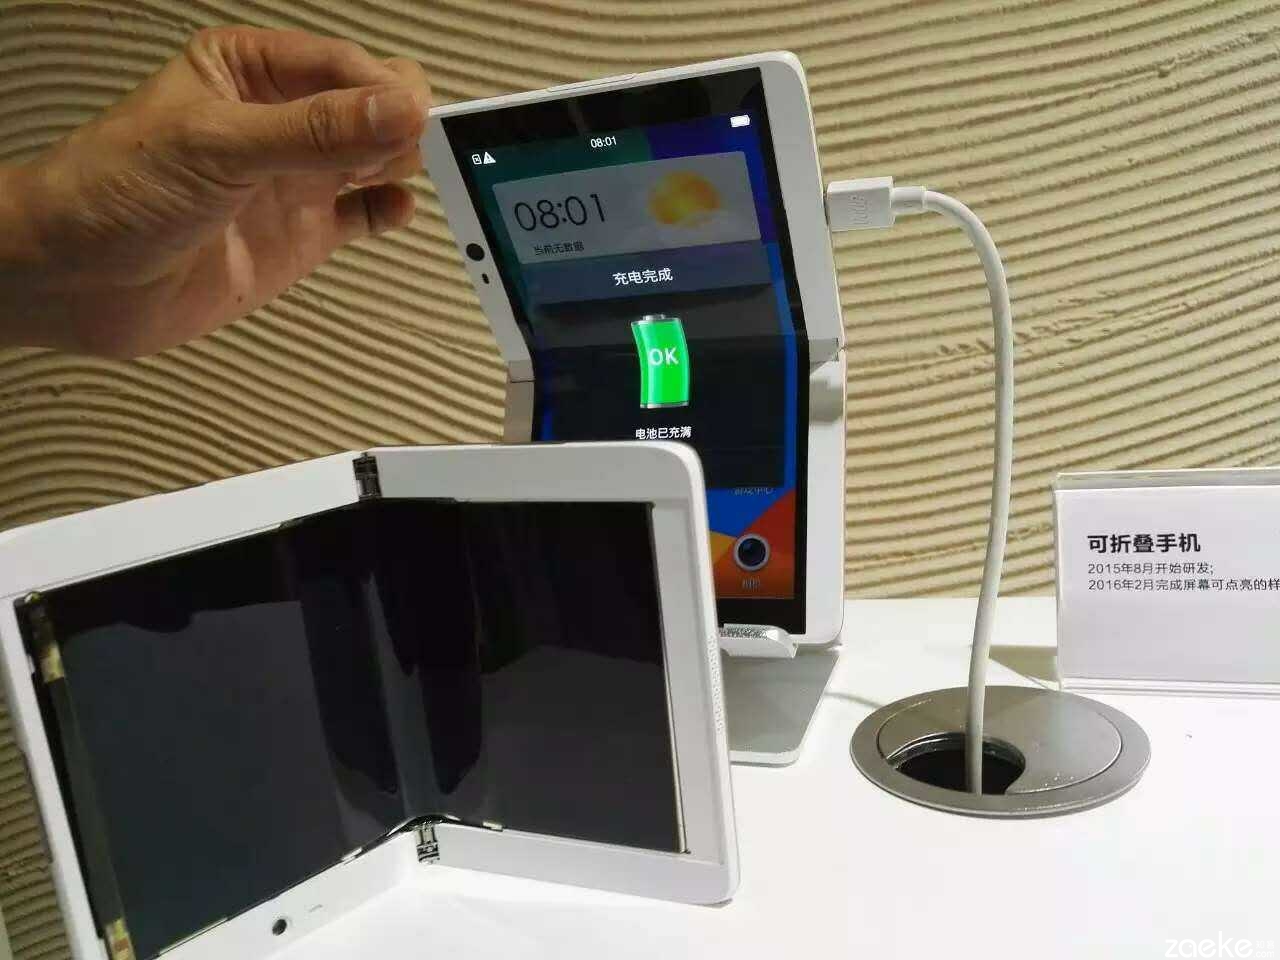 Oppo-folding-mobile-device.jpg